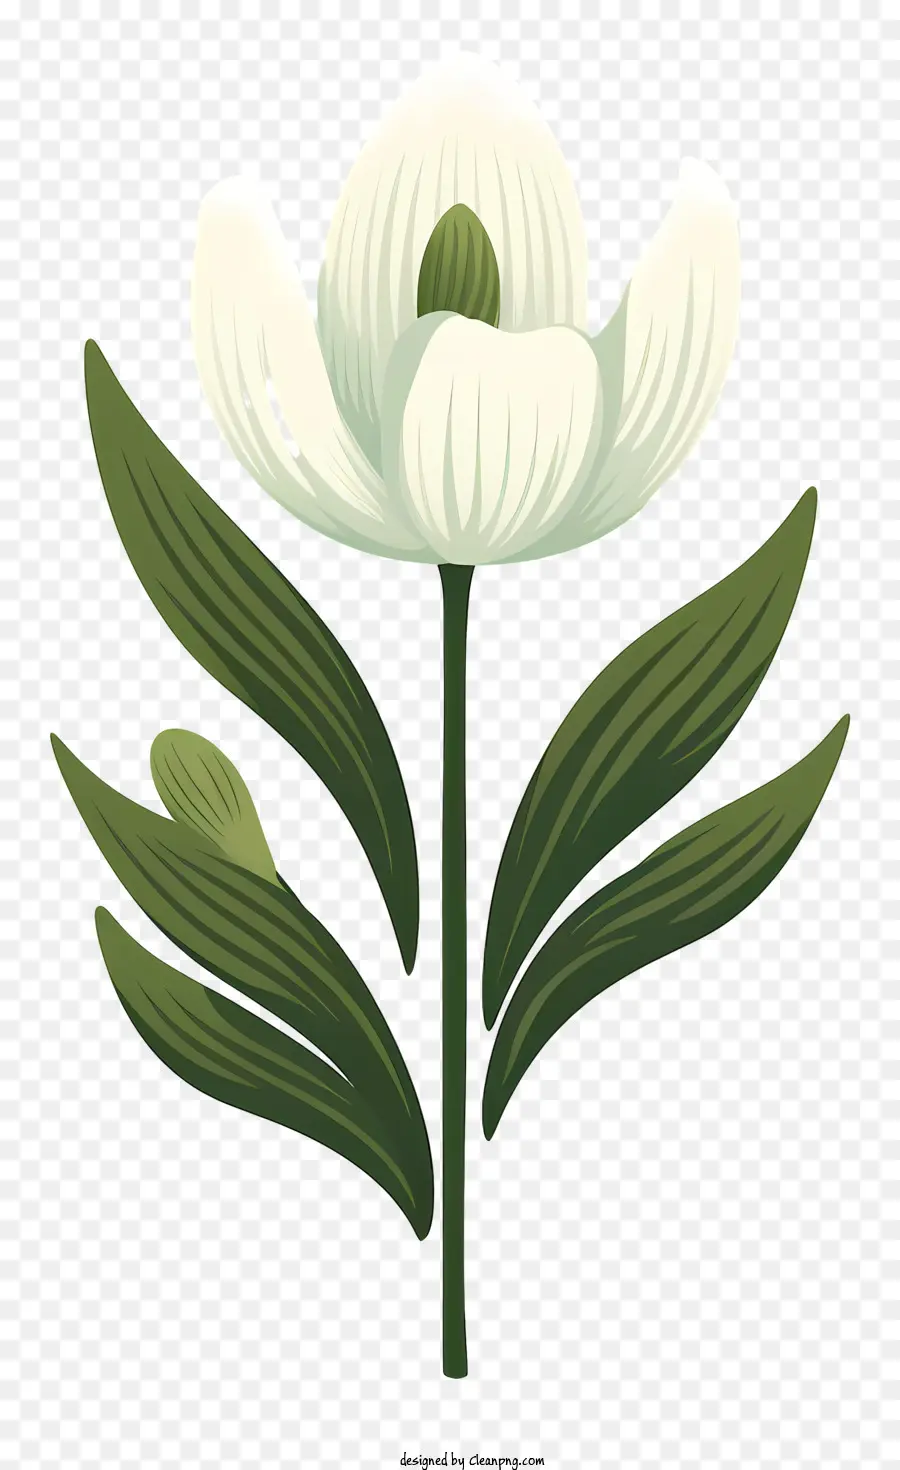 fiore bianco - Disegno di fiore bianco con foglie verdi